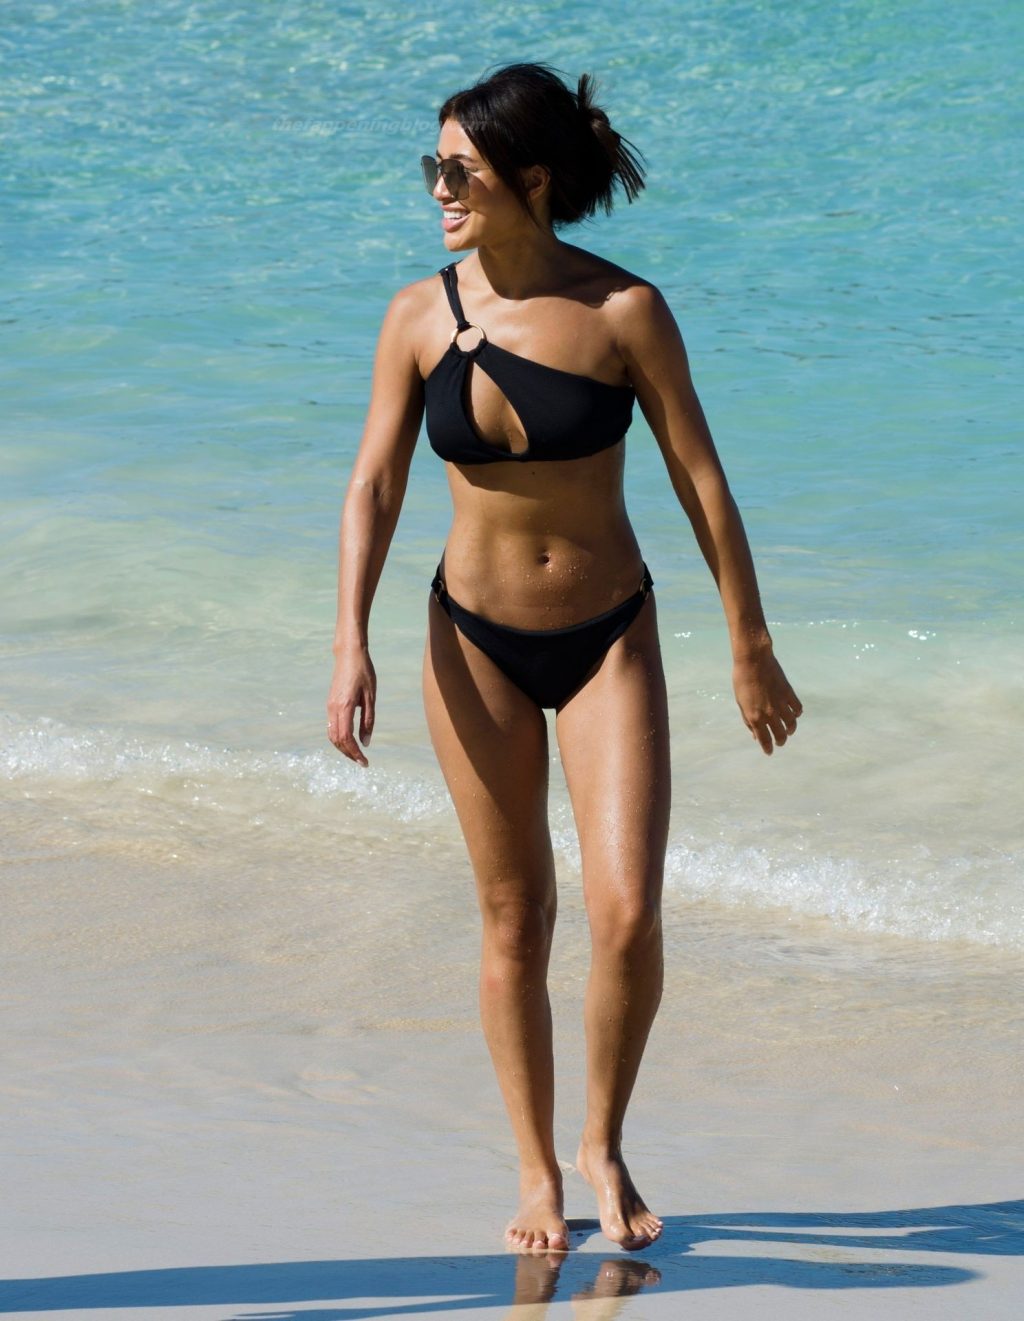 Montana Brown Has Fun in the Sun on the Beach in Barbados (64 Photos)